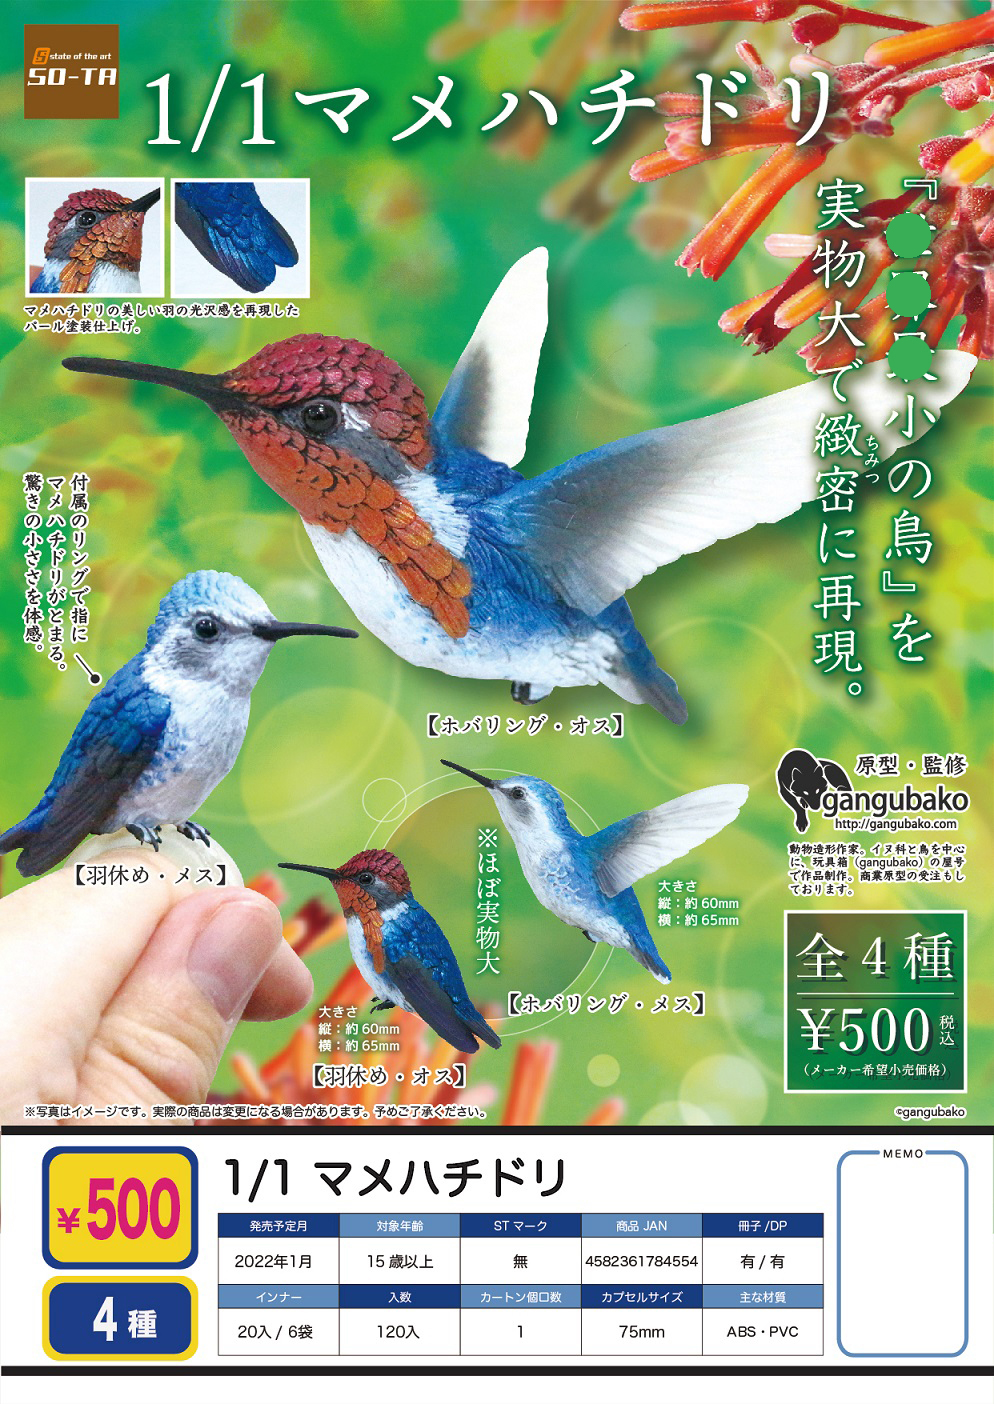 虾壳社 现货日本SO-TA扭蛋 仿真鸟类模型摆件 麻雀 野生动物 翠鸟